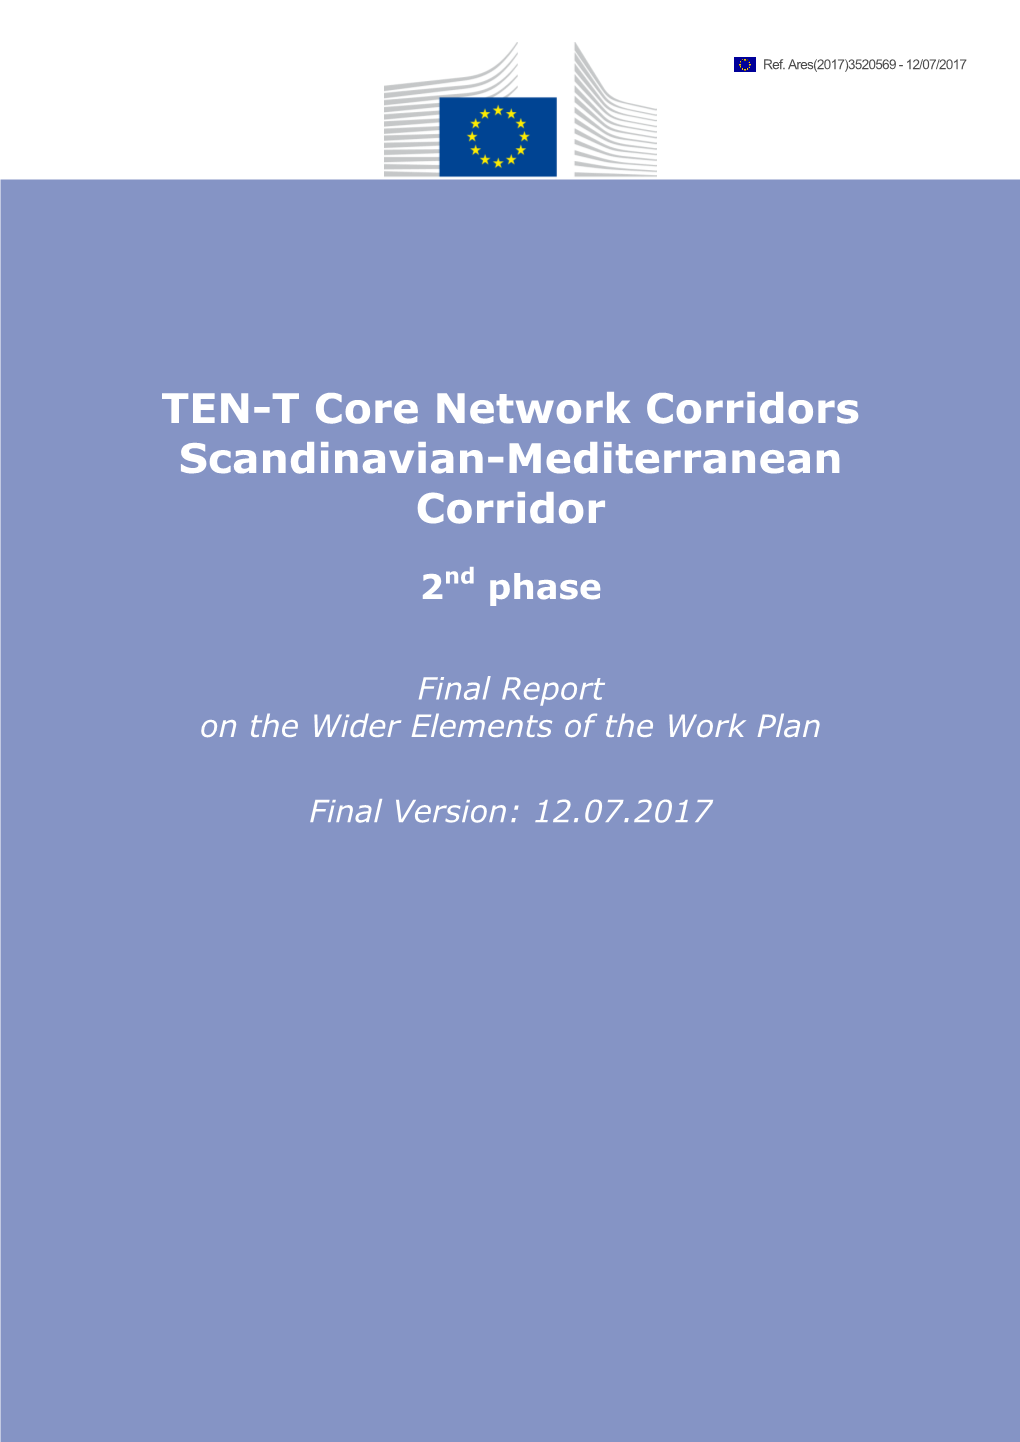 TEN-T Core Network Corridors Scandinavian-Mediterranean Corridor